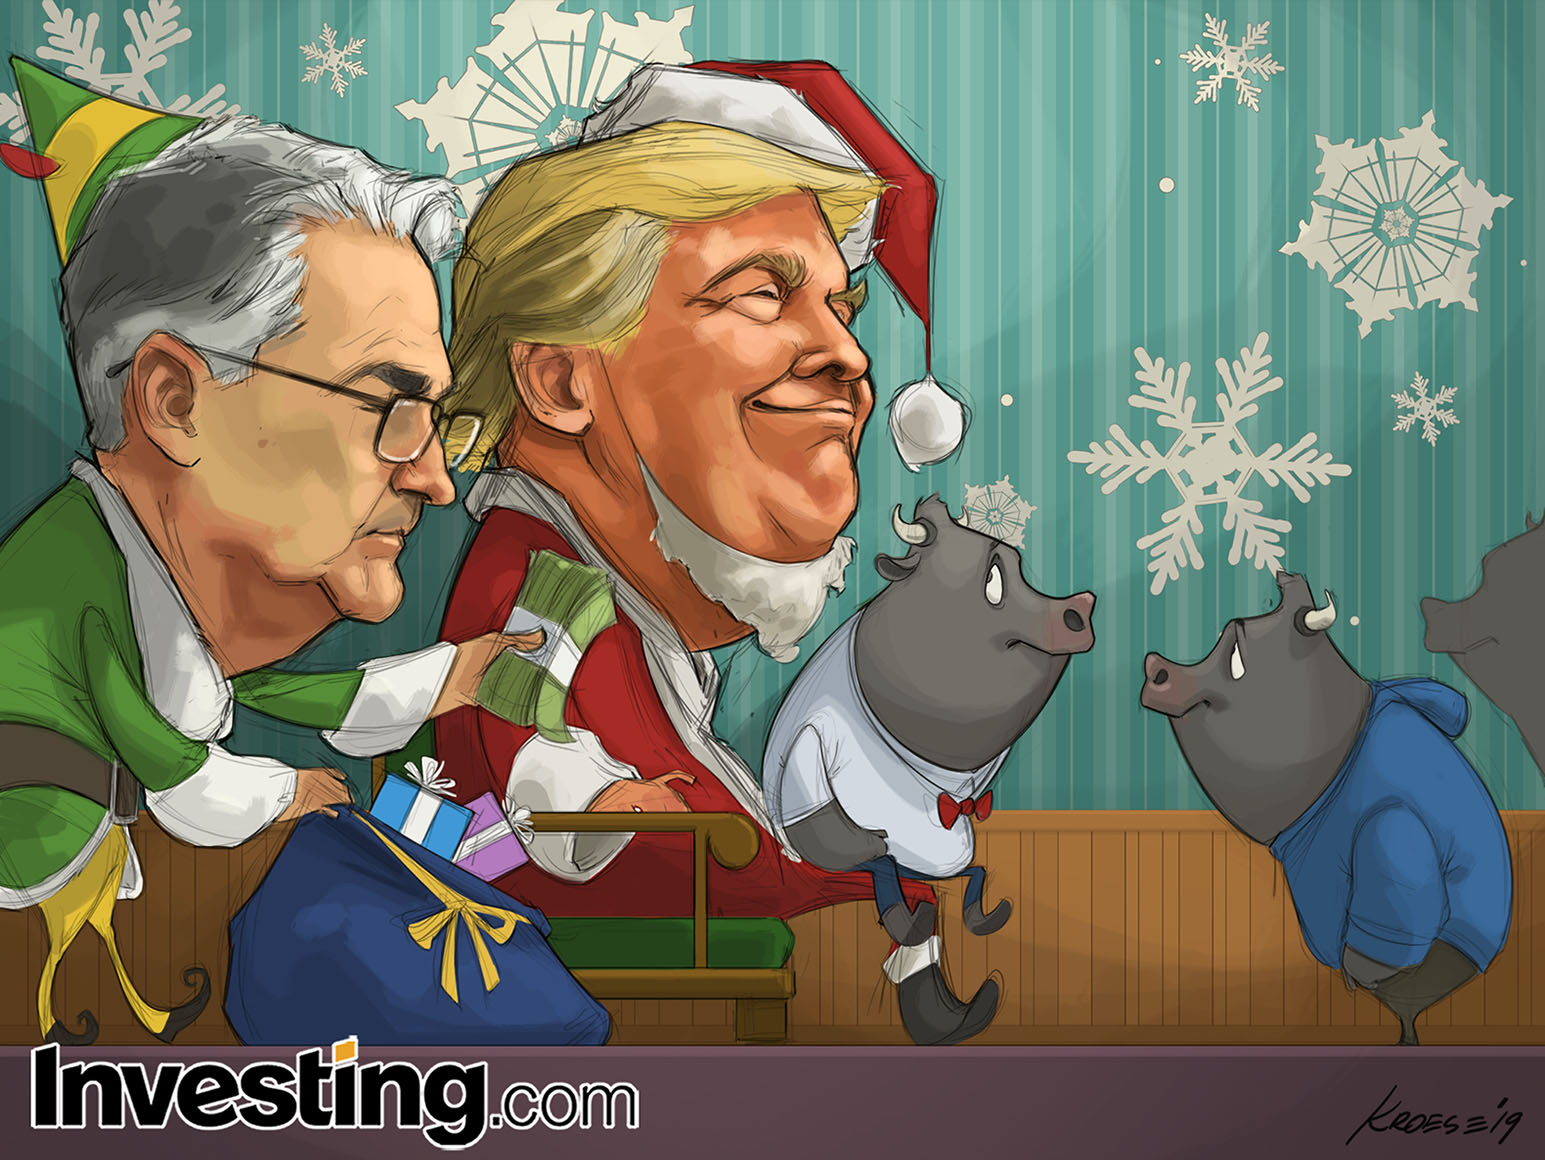 Joyeux Noel et Bonnes Fêtes de fin d'année de la part d'Investing.com!